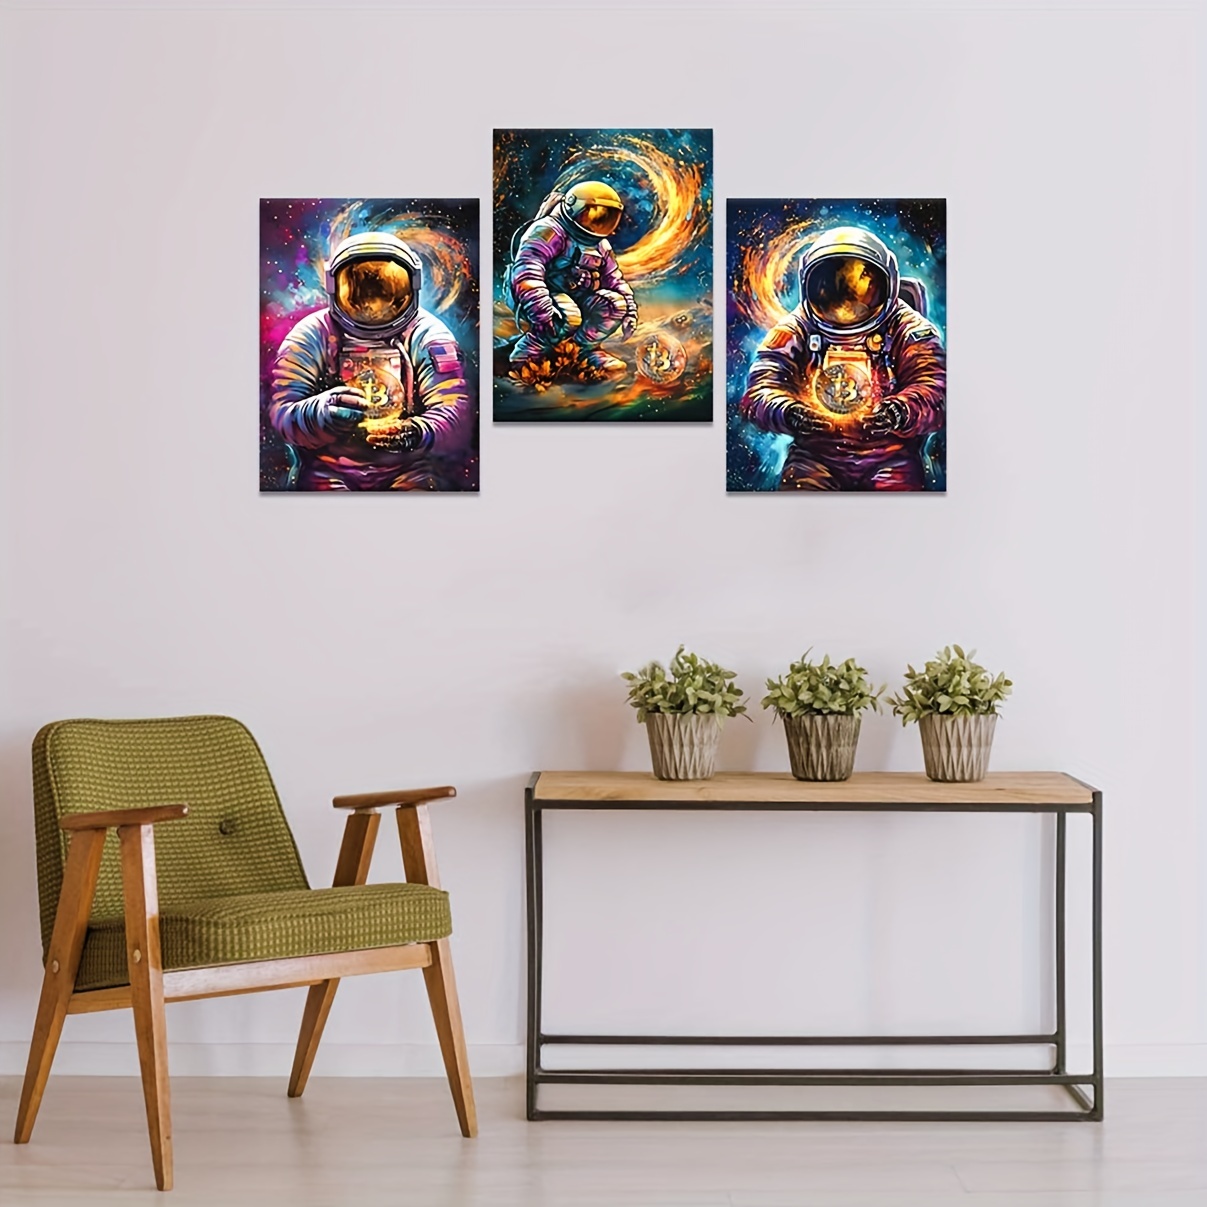 キャンバスウォールアート 3枚 ゴールデンビットコインポスター 抽象宇宙飛行士宇宙飛行士写真 仮想通貨絵画 プリントアートワーク リビングルーム  オフィス ホームデコレーション フレームなし 12インチx16インチ